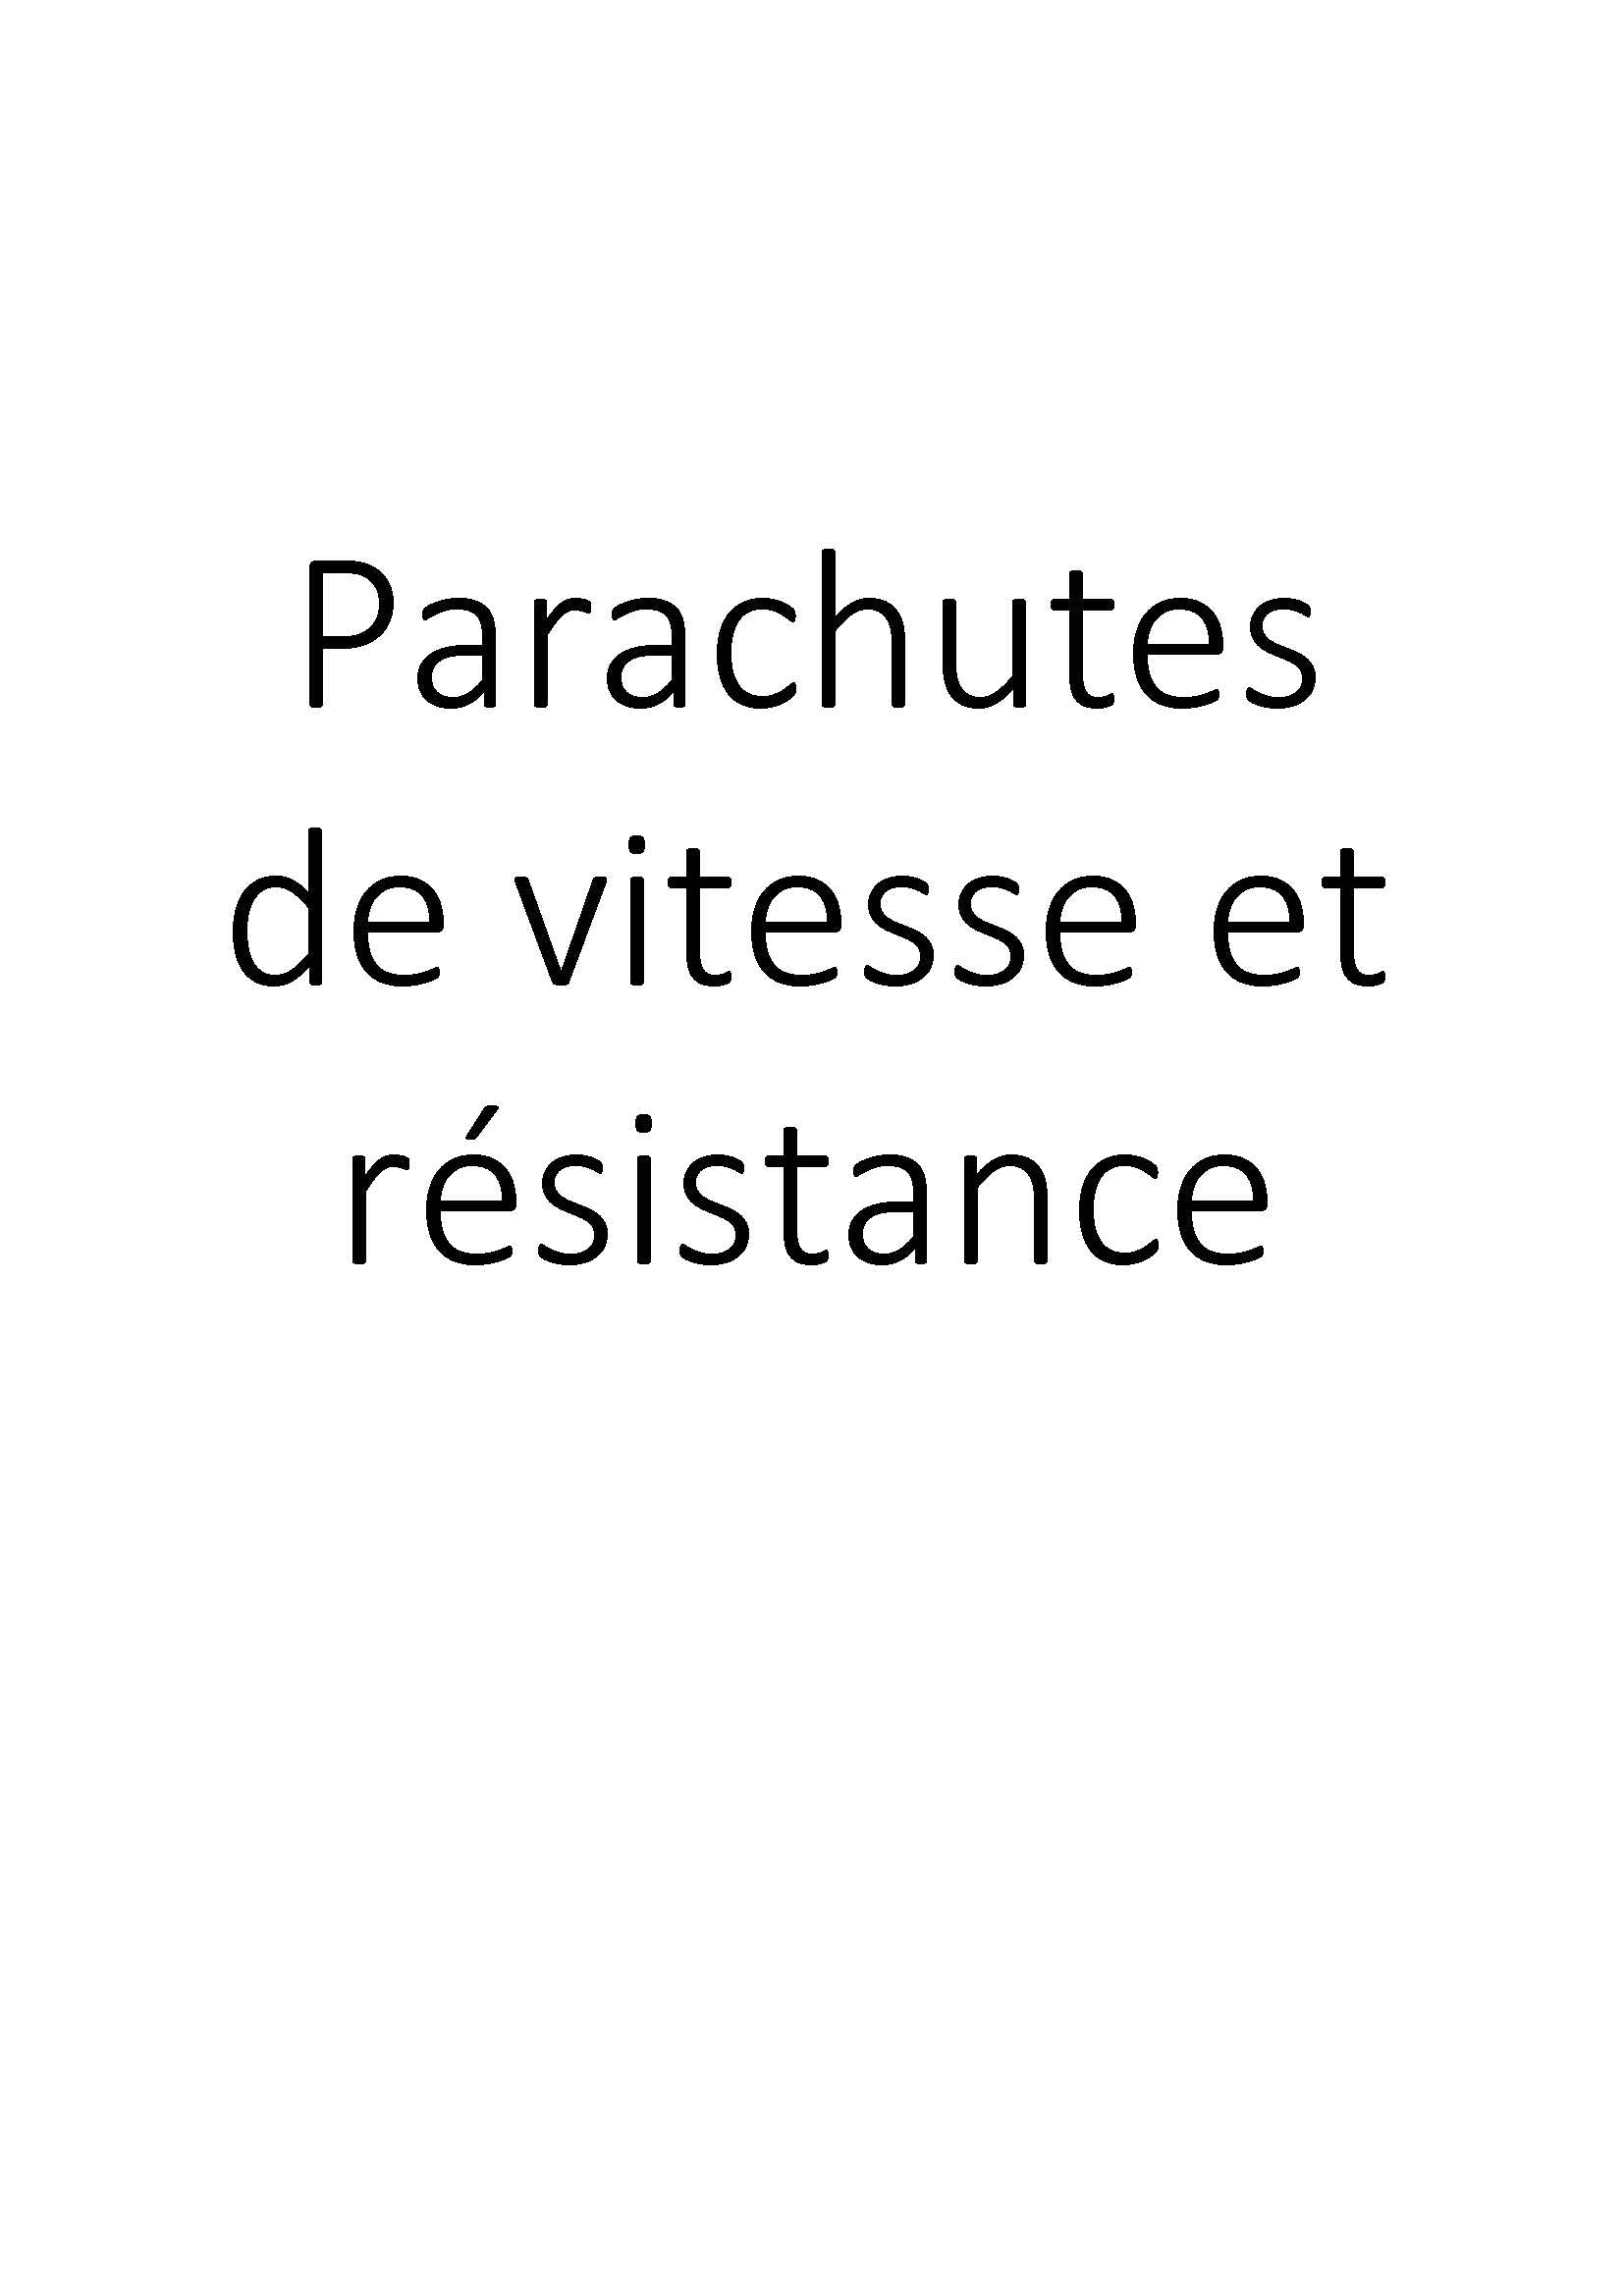 Parachutes de vitesse et résistance clicktofournisseur.com